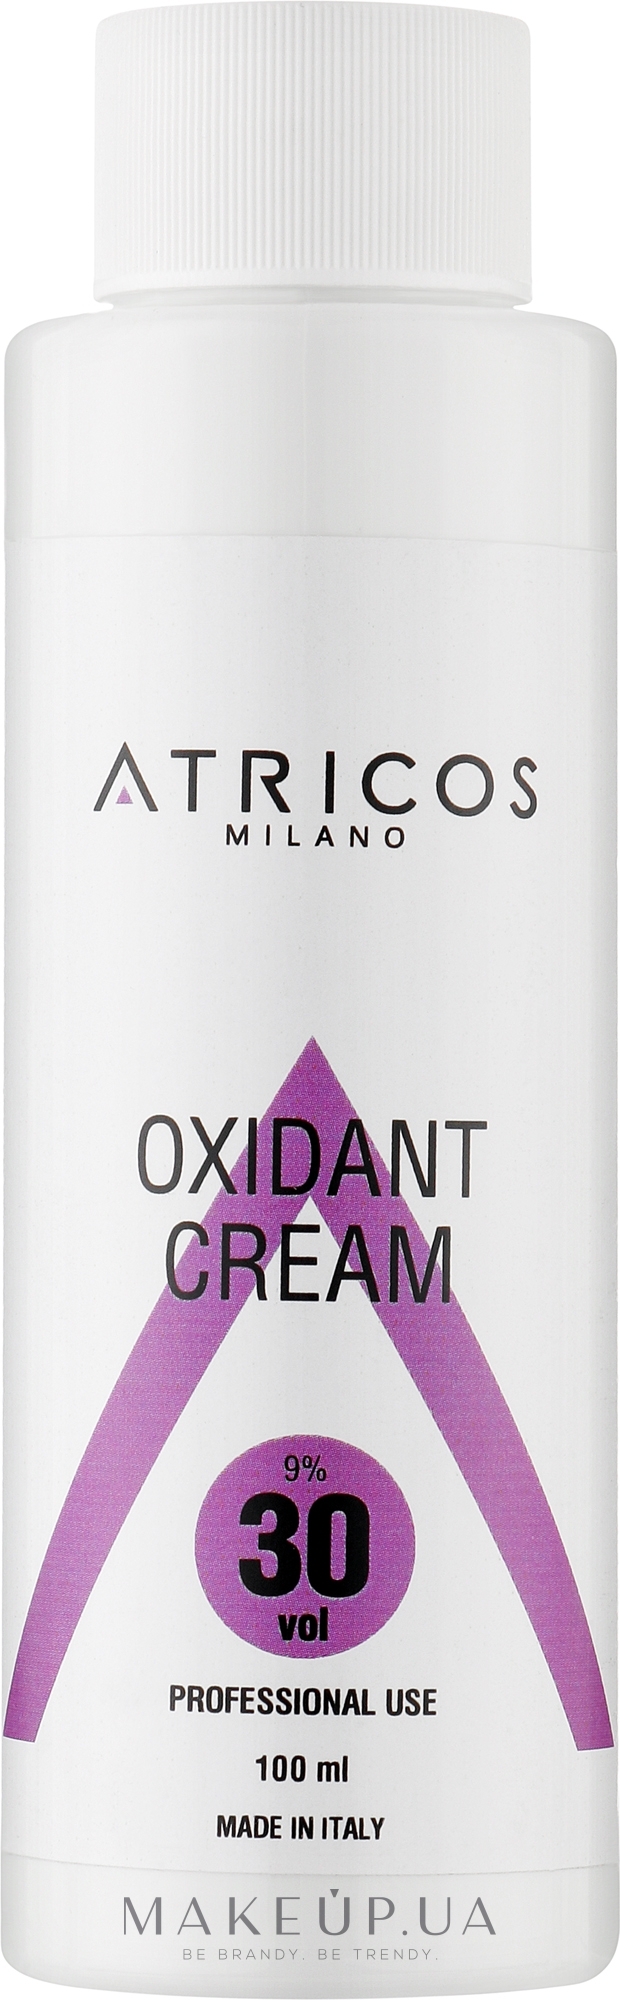 Оксидант-крем для окрашивания и осветления прядей - Atricos Oxidant Cream 30 Vol 9% — фото 100ml